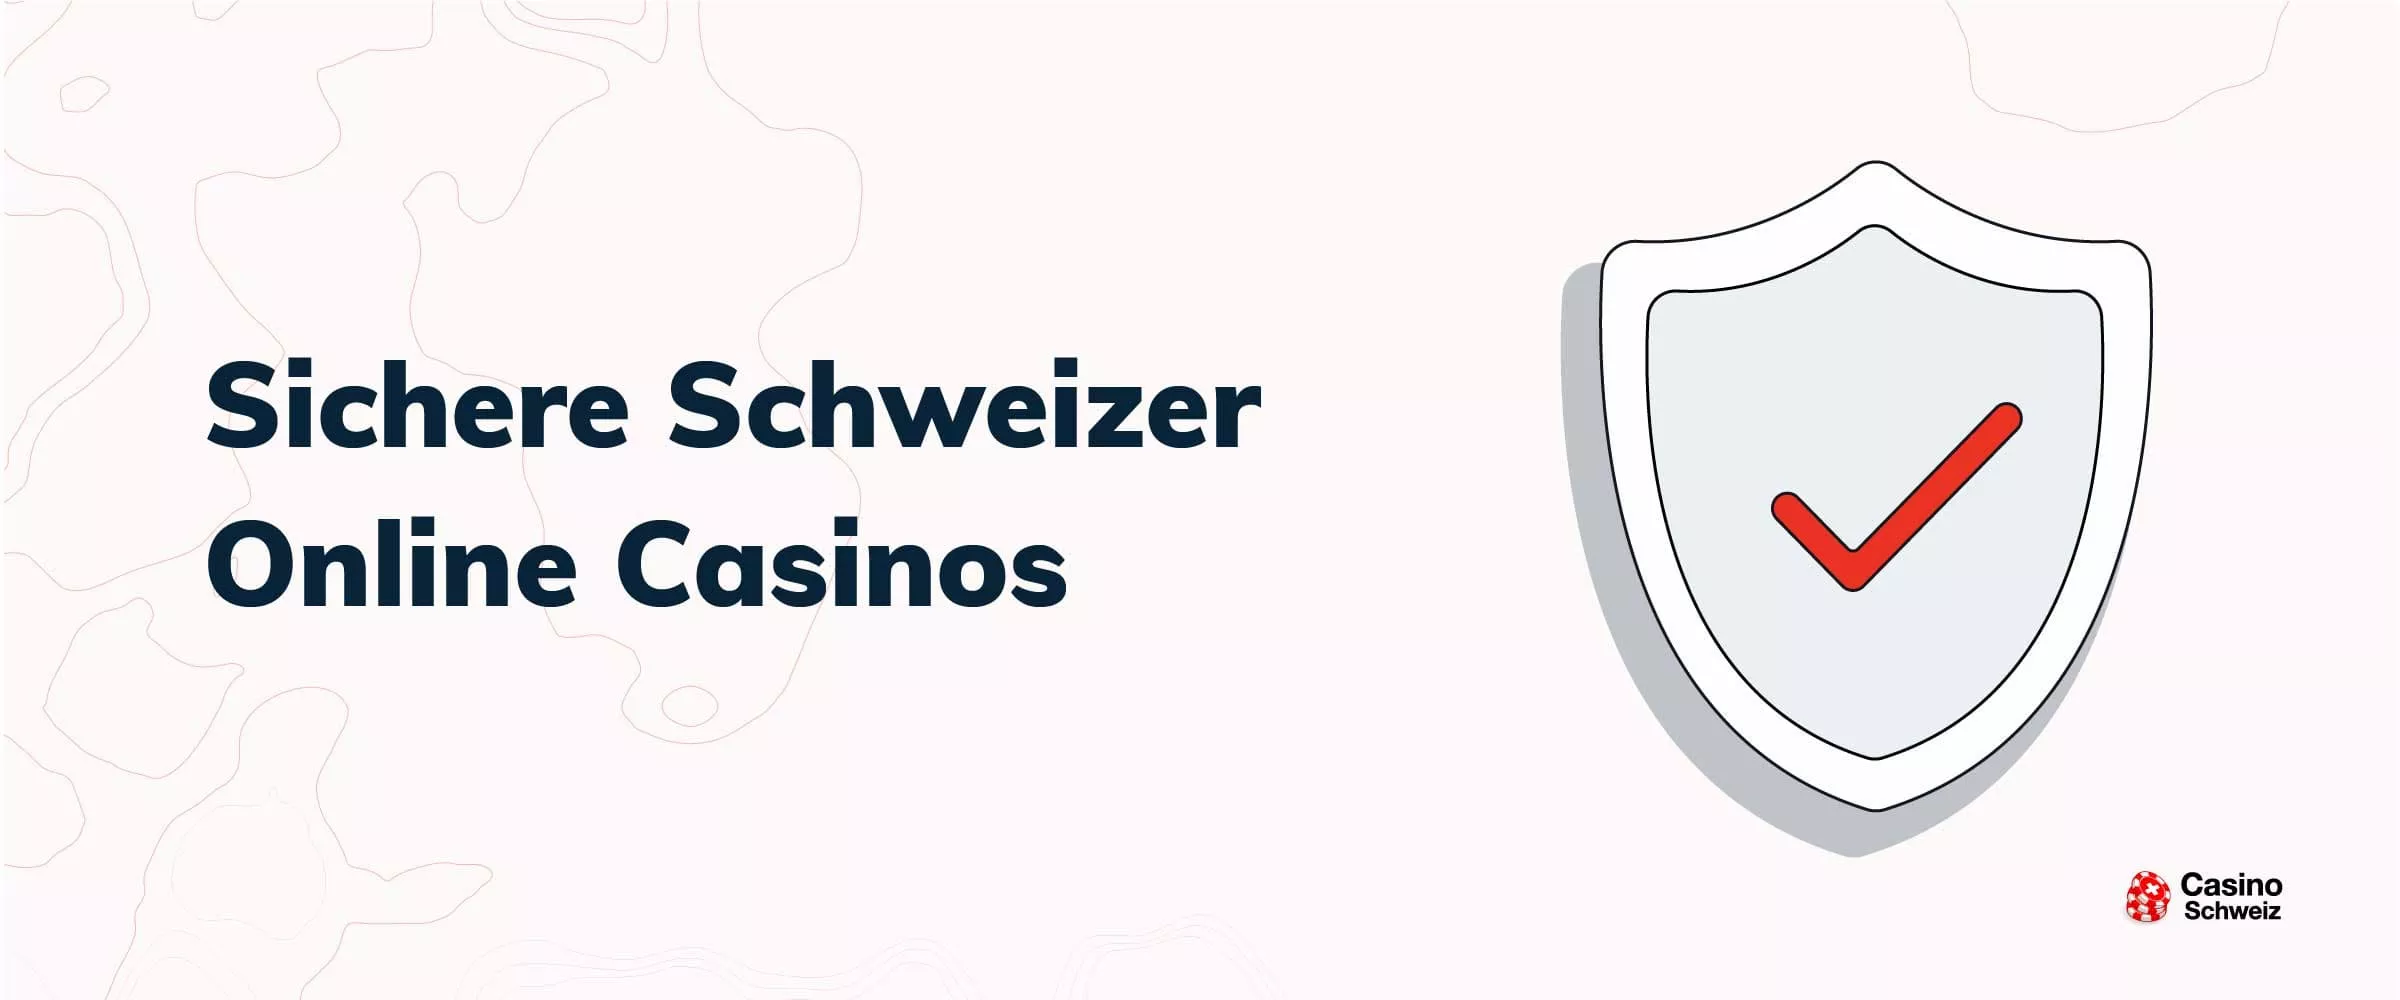 Sichere Schweizer Online Casinos